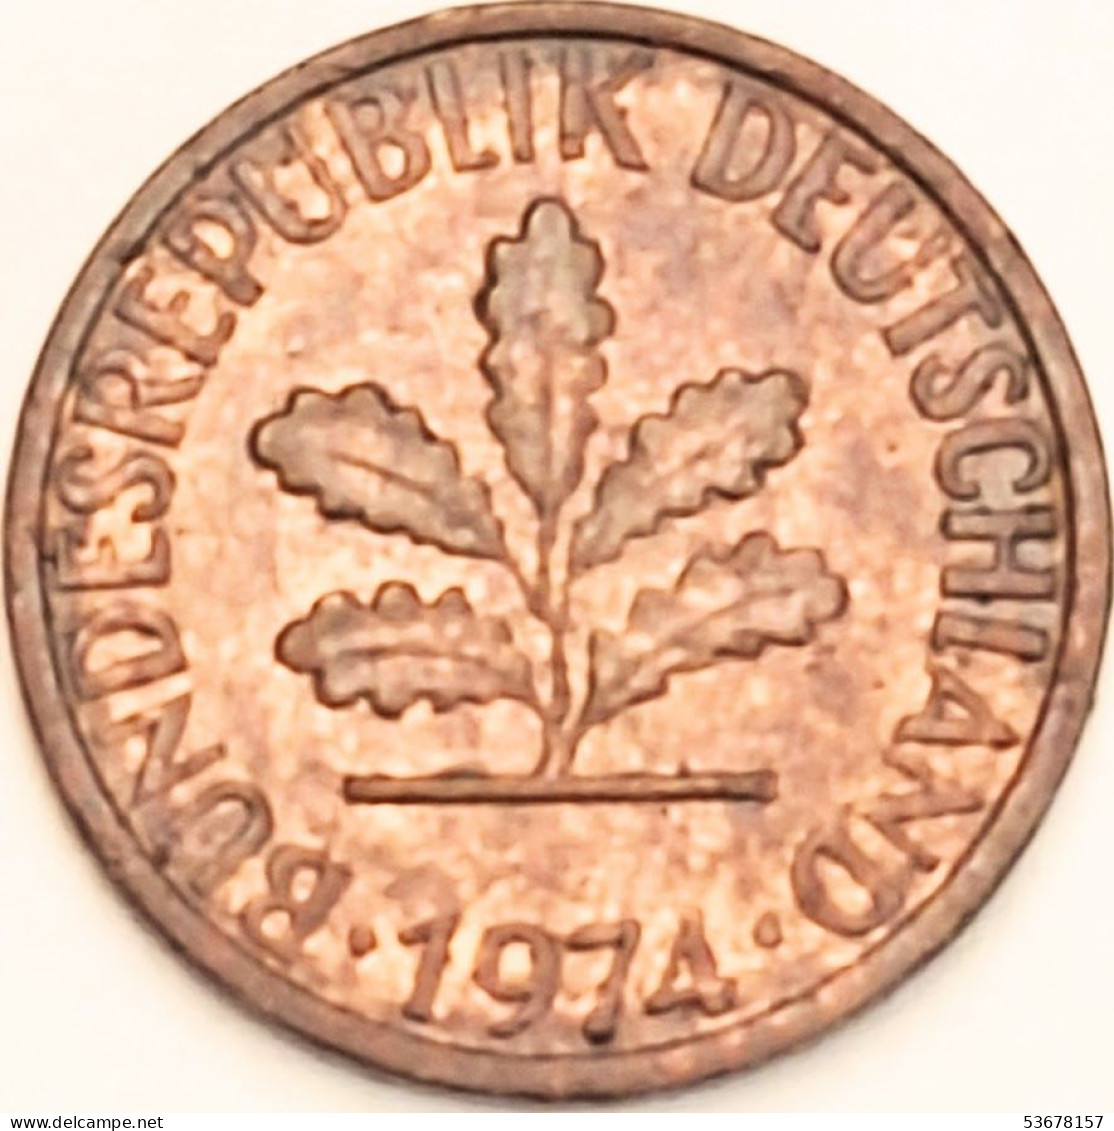 Germany Federal Republic - Pfennig 1974 D, KM# 105 (#4463) - 1 Pfennig